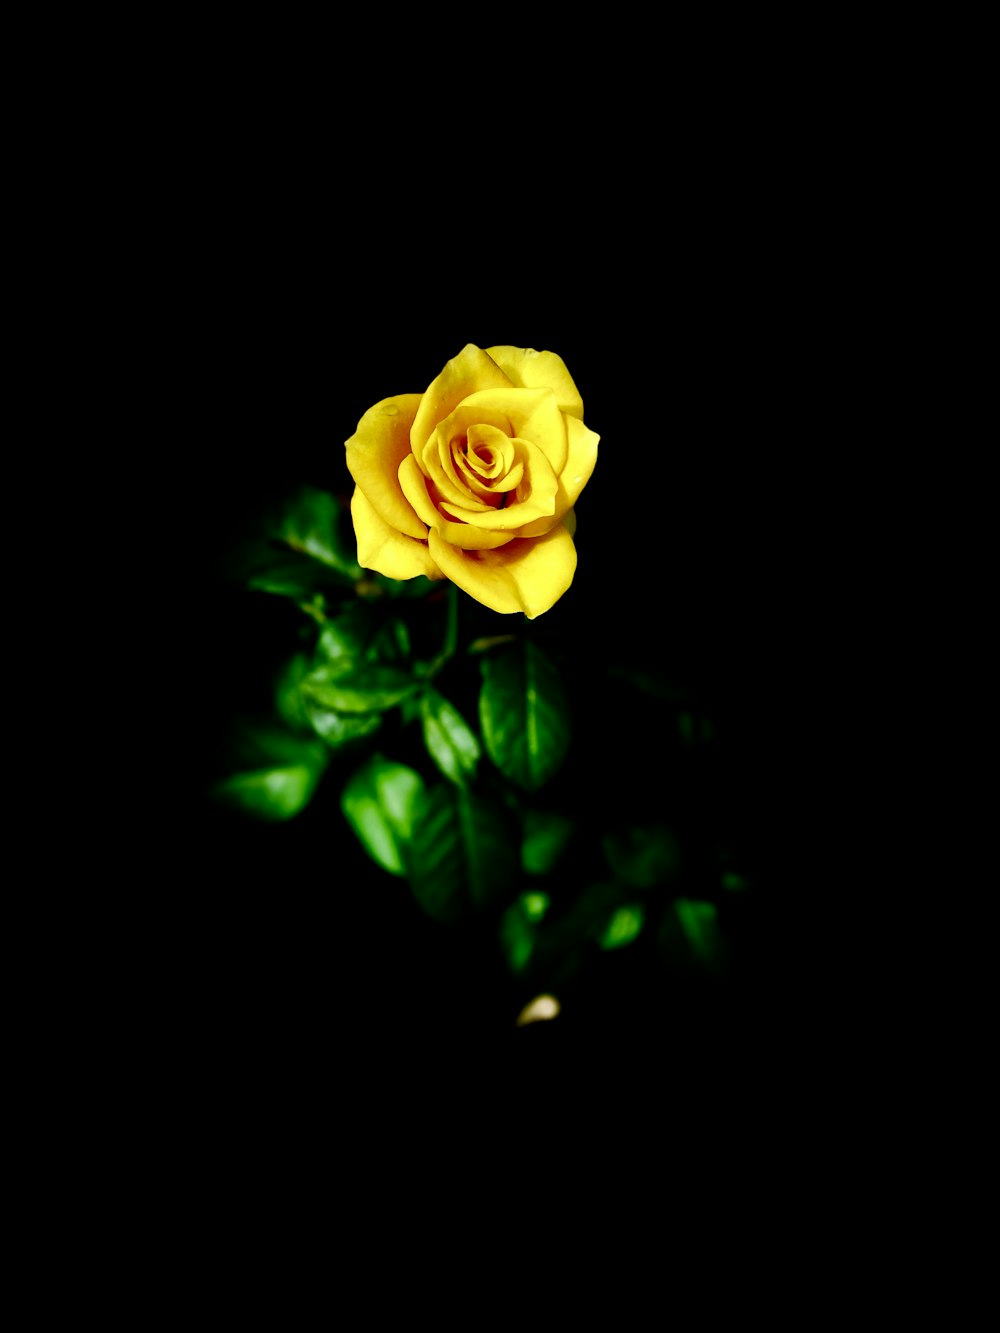 咲き誇る黄色いバラの花のセレクティブフォーカス撮影